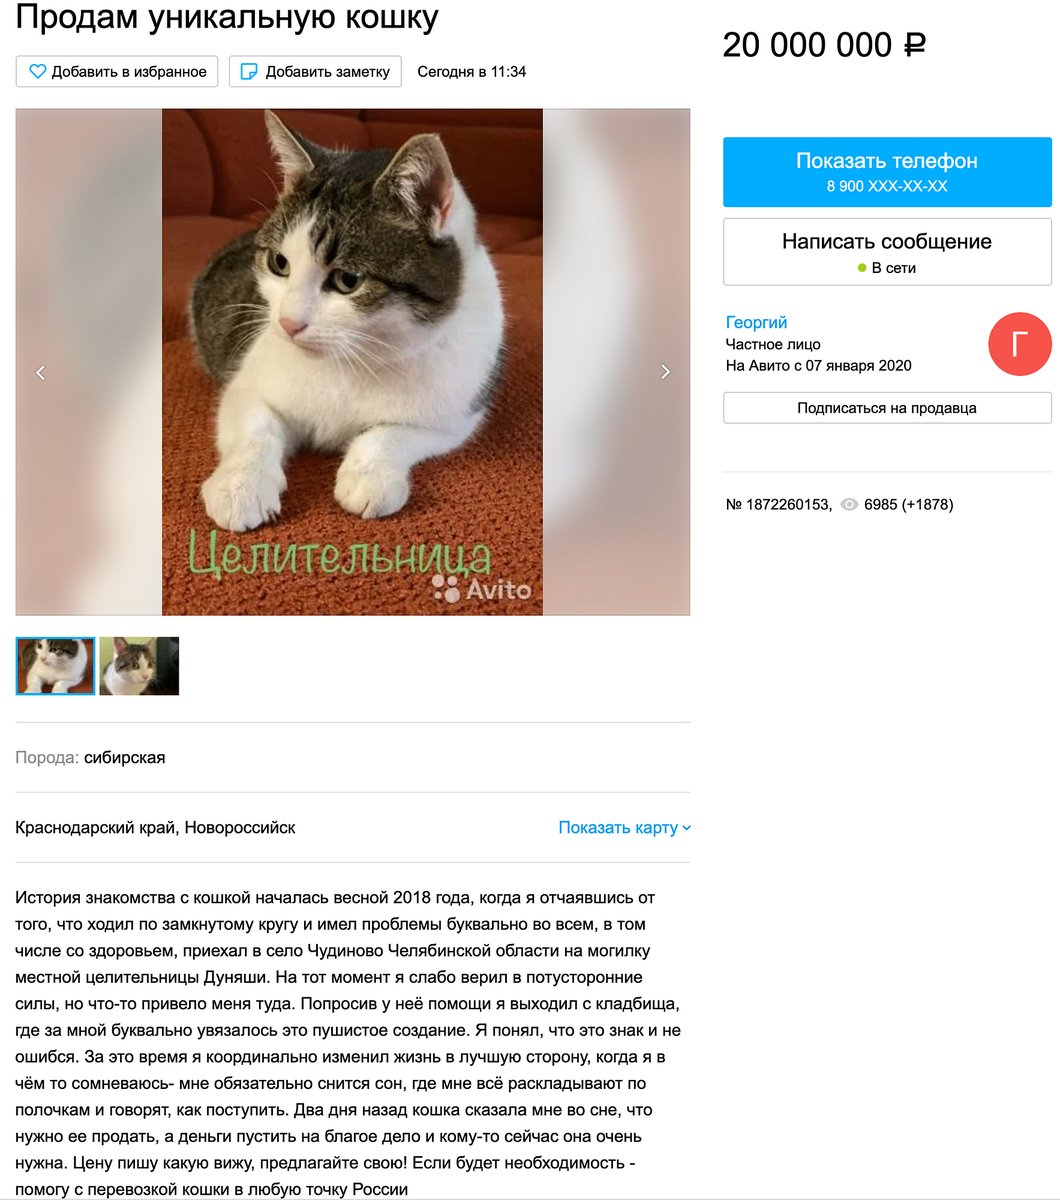 Ростовский уникальный кот. Есть кошку продали. Как предложить свою кошку в рекламу. Продается кошка отзывы